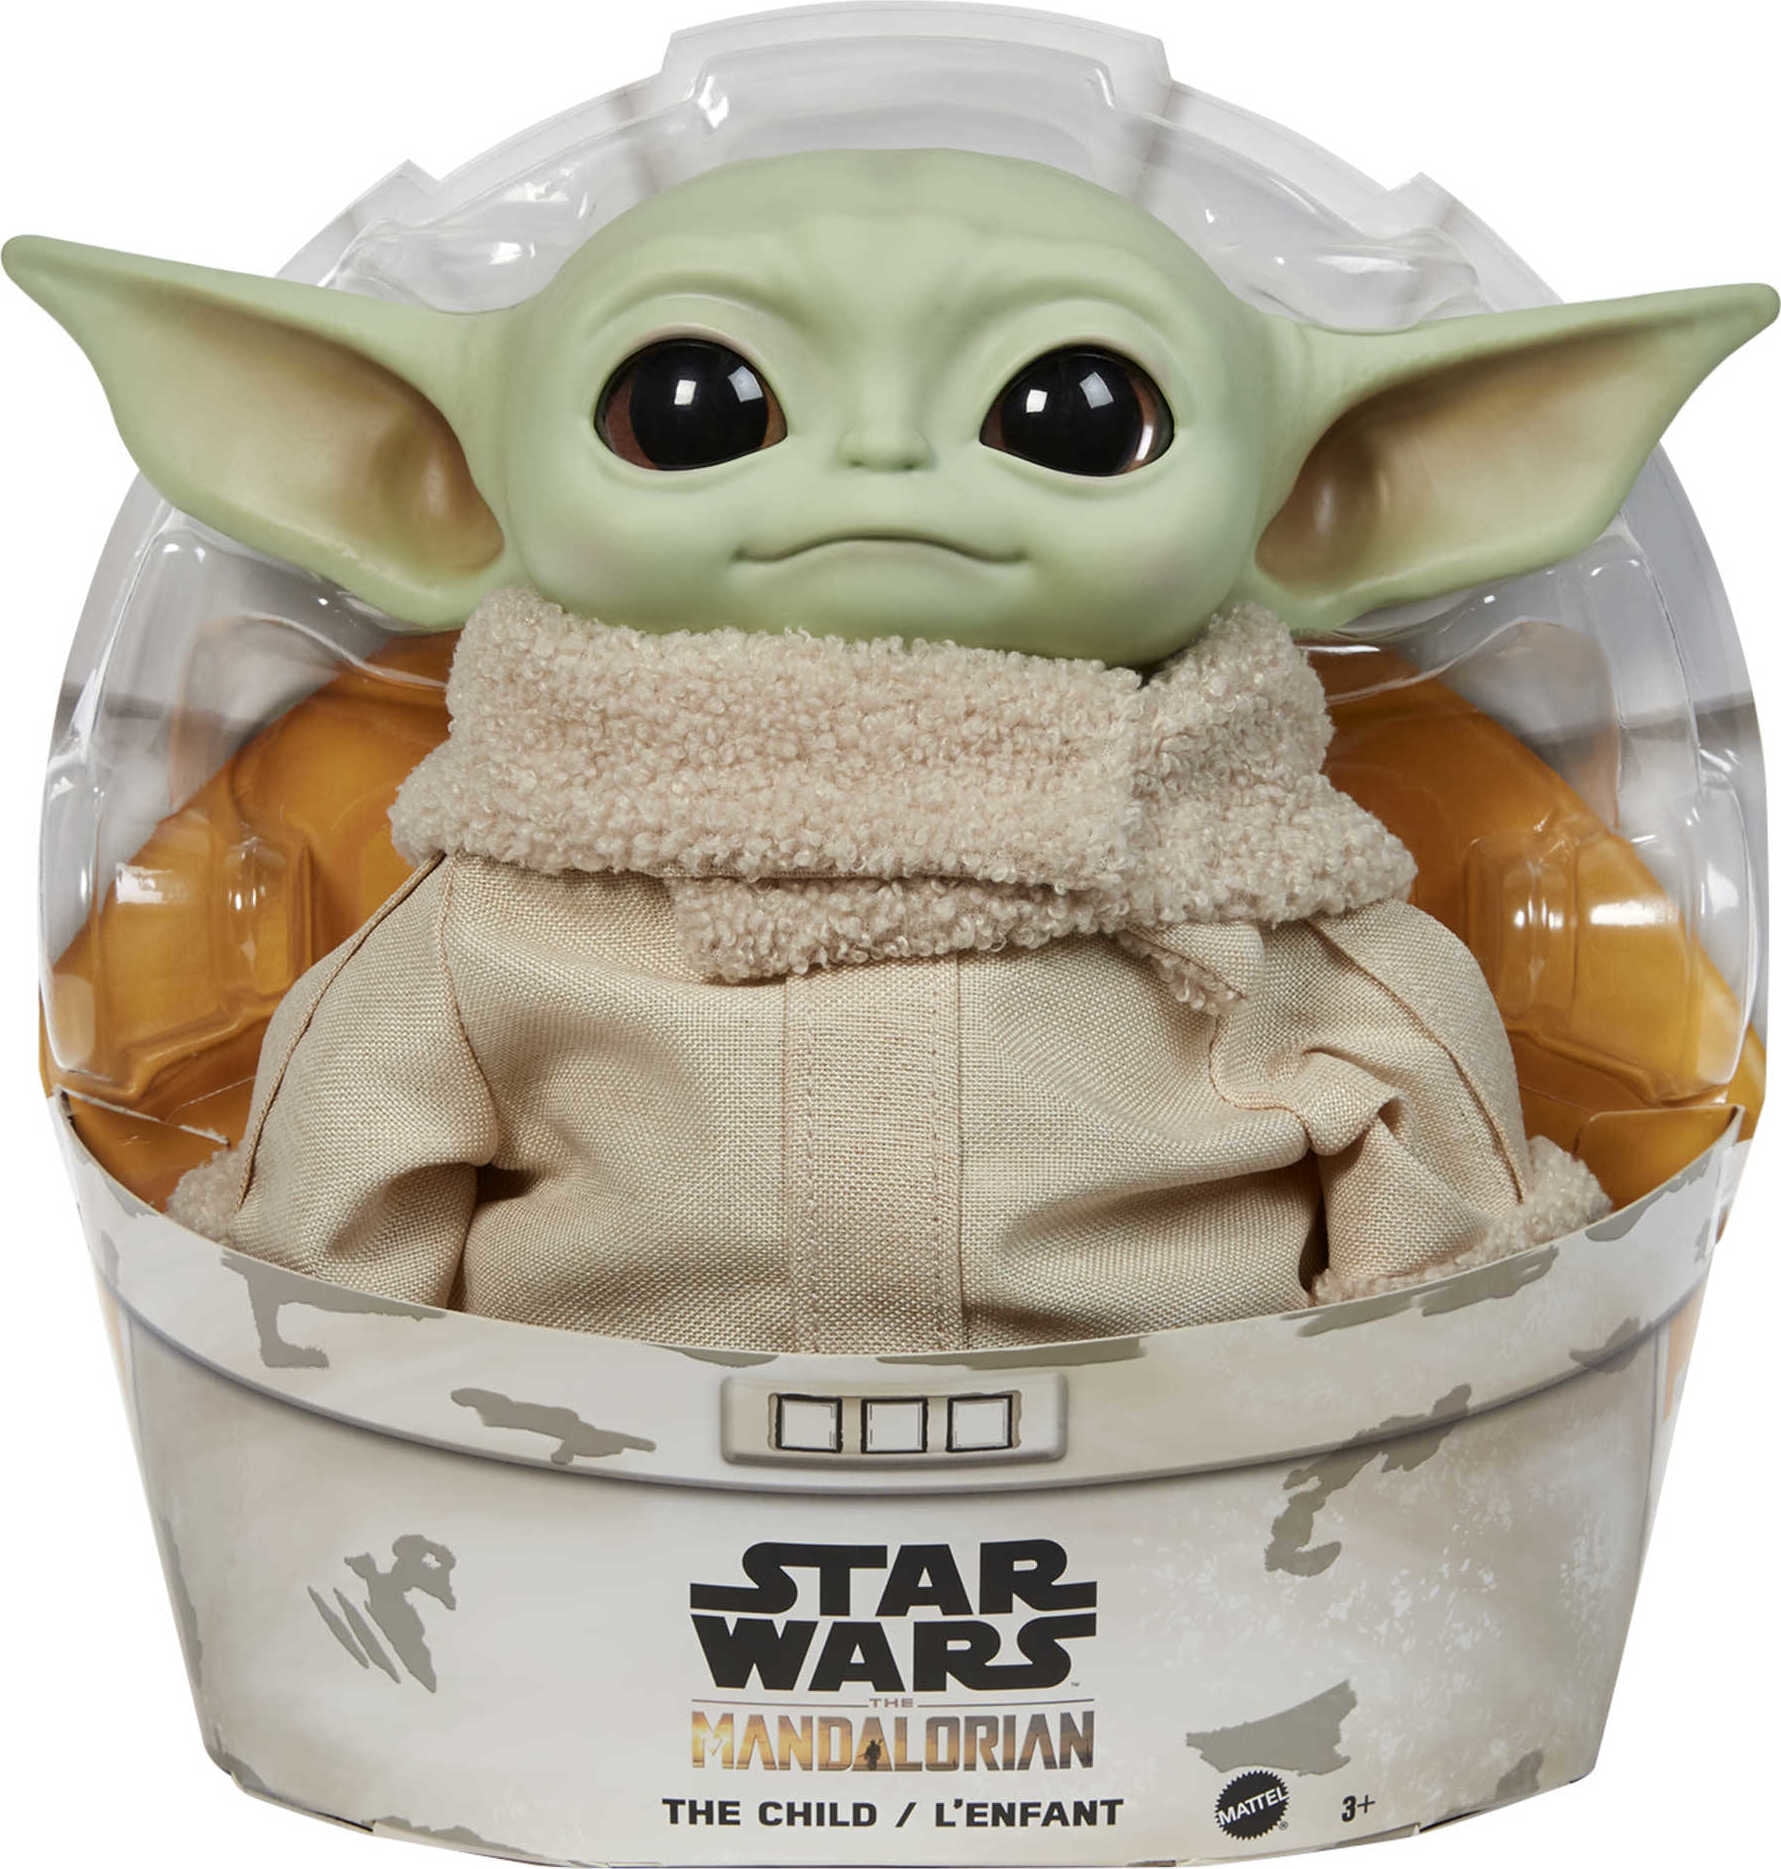 The Child 11” Plush Mattel Star Wars Mandalorian Baby Yoda Disney Funko Hasbro